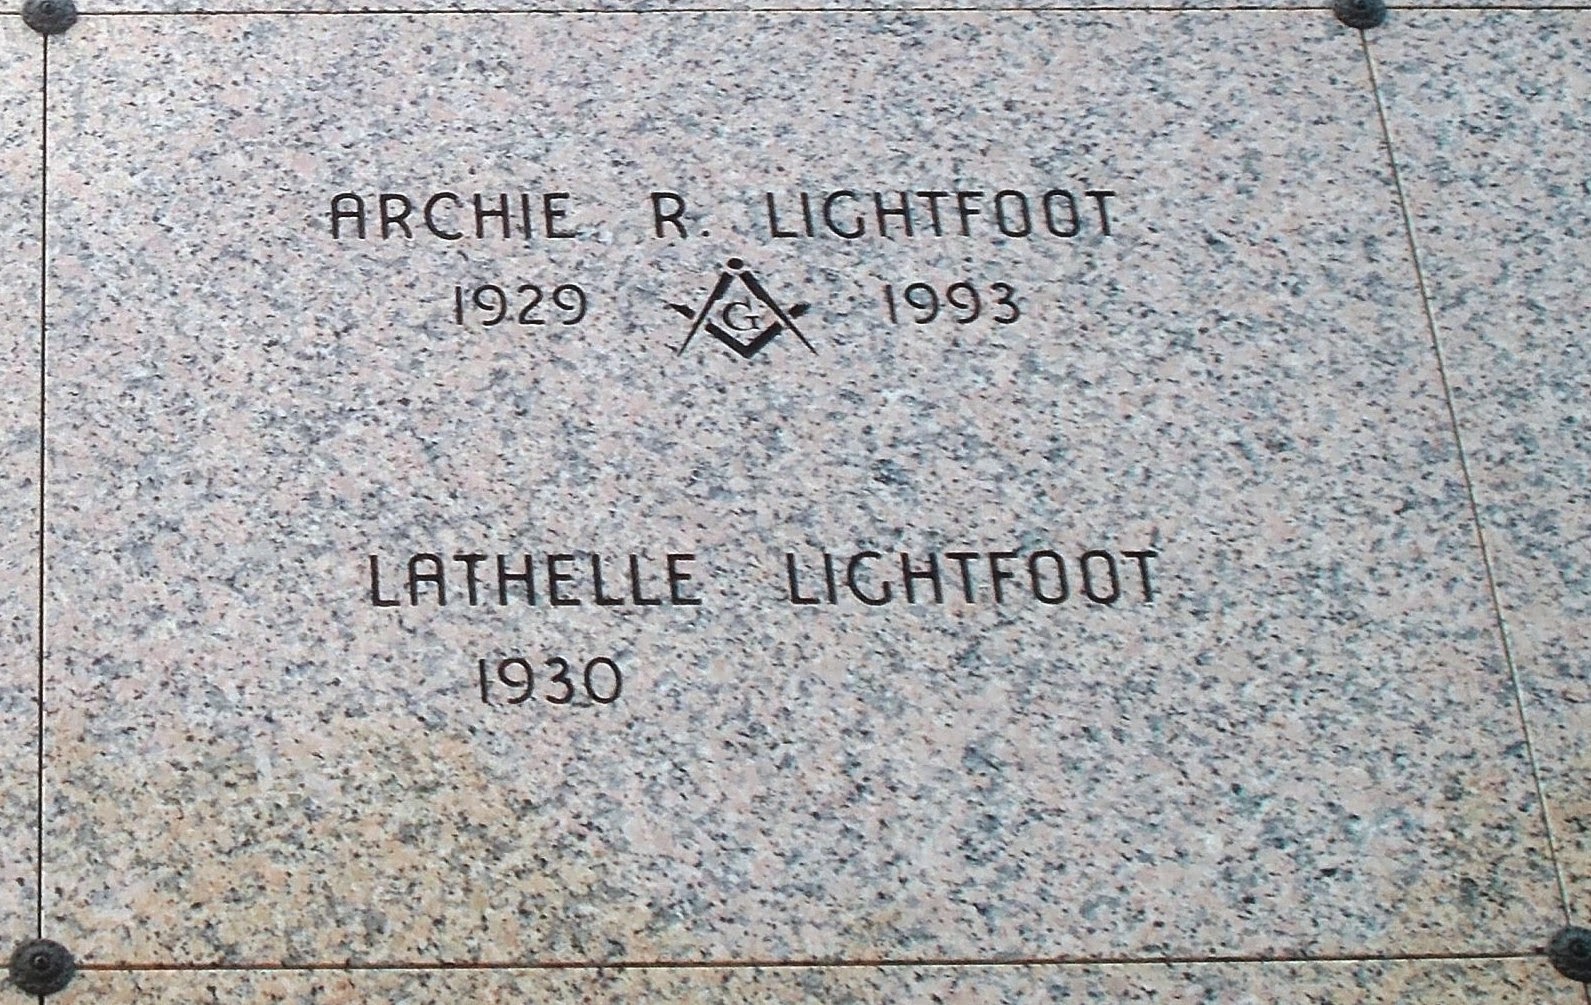 Lathelle Lightfoot